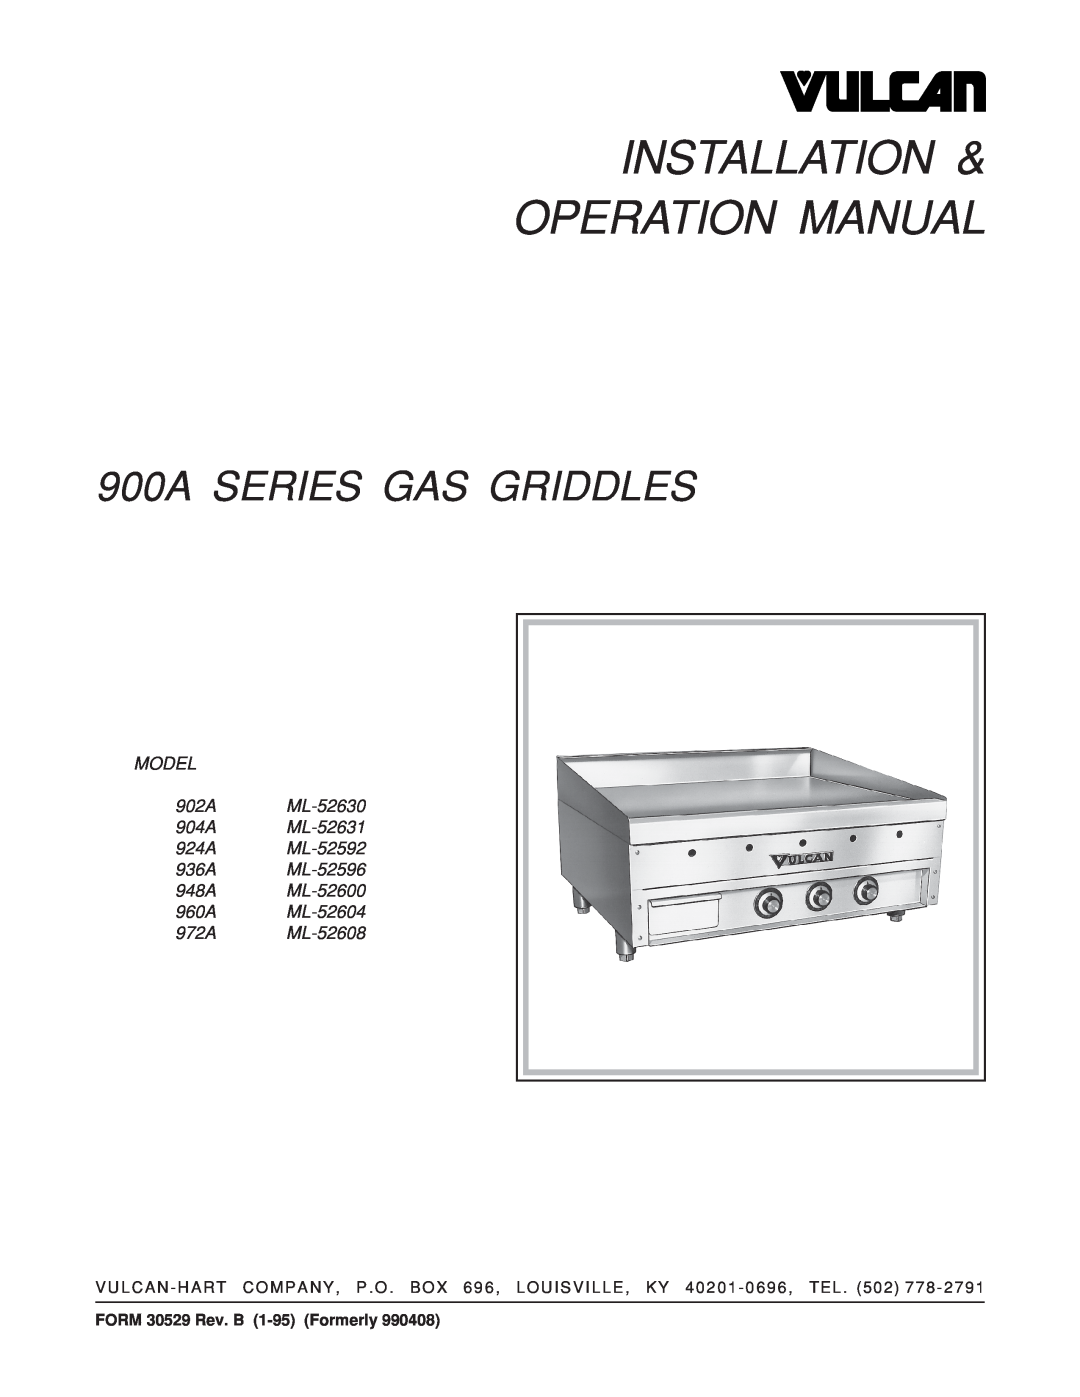 Vulcan-Hart 960A ML-52604 operation manual 900A SERIES GAS GRIDDLES, MODEL 902A ML-52630 904A ML-52631 924A ML-52592 